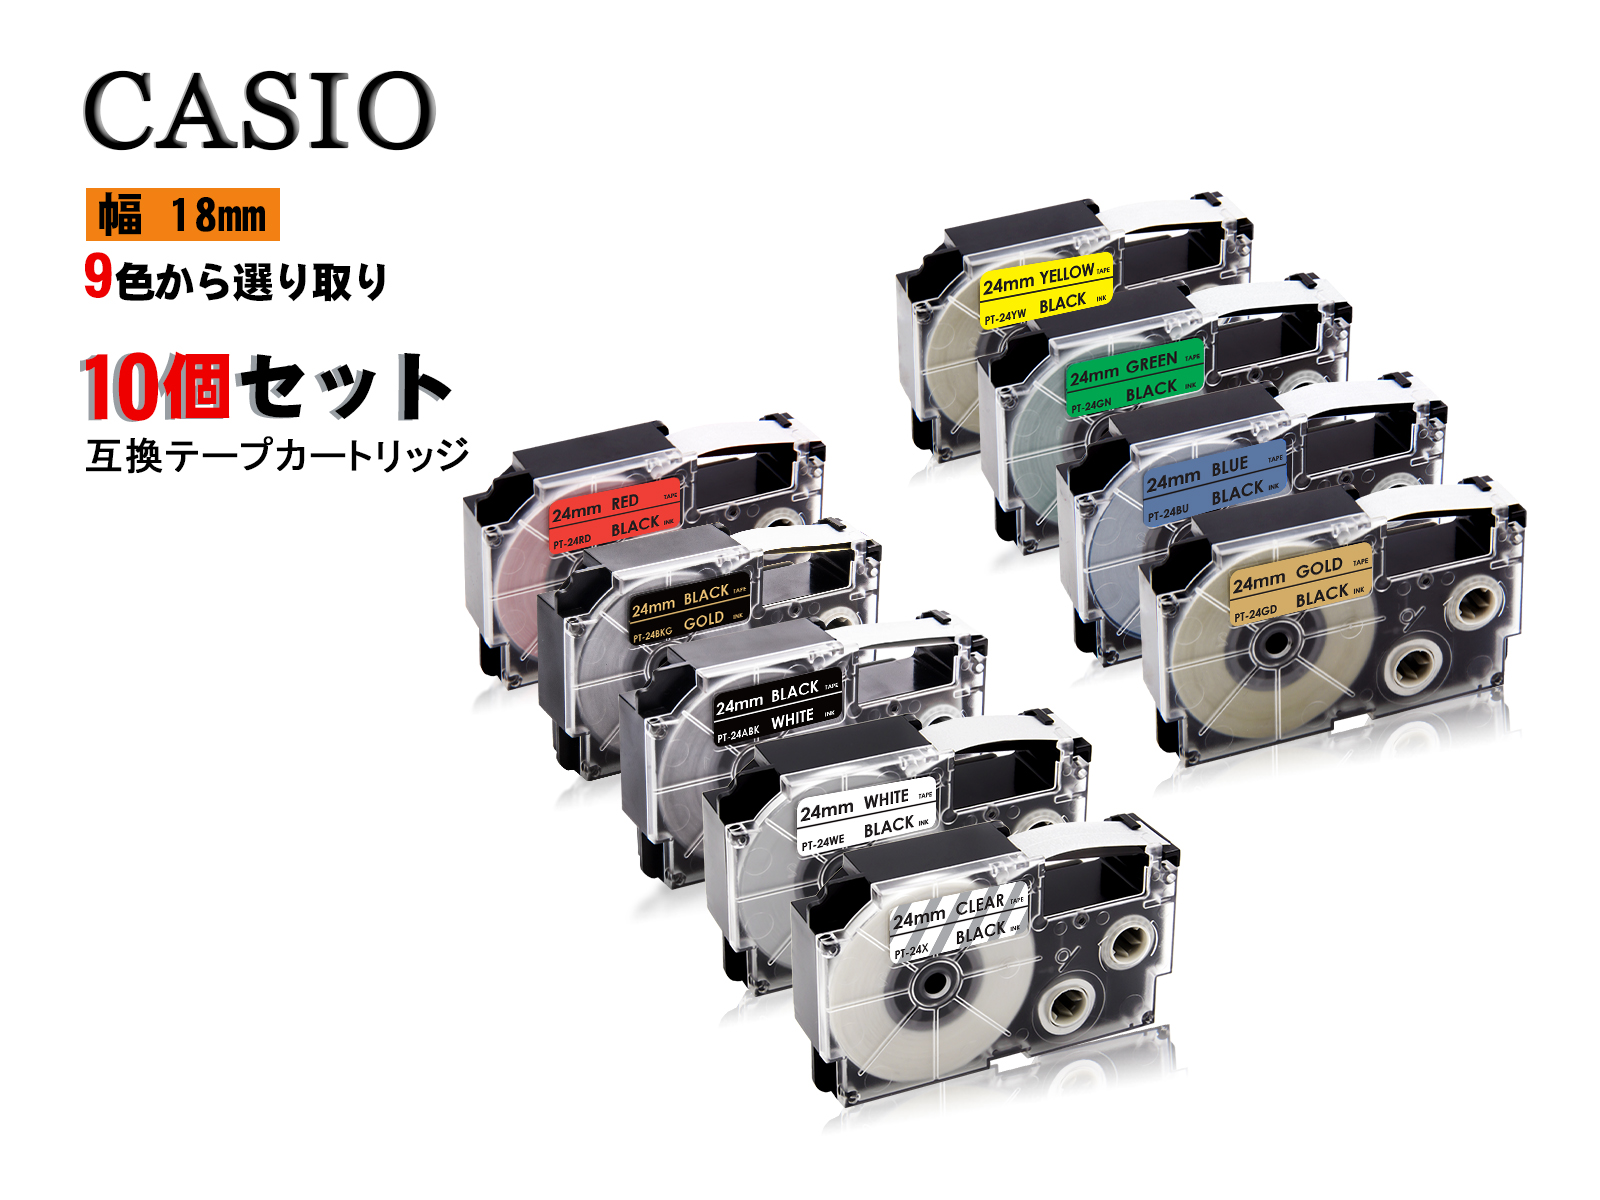 激安特価 Casio casio カシオ ネームランド 互換テープカートリッジ テプラテープ 互換 幅 24mm 長さ 8m 全 9色 テープカートリッジ  カラーラベル カシオ用 ネームランド 10個セット 2年保証可能:注目ブランド